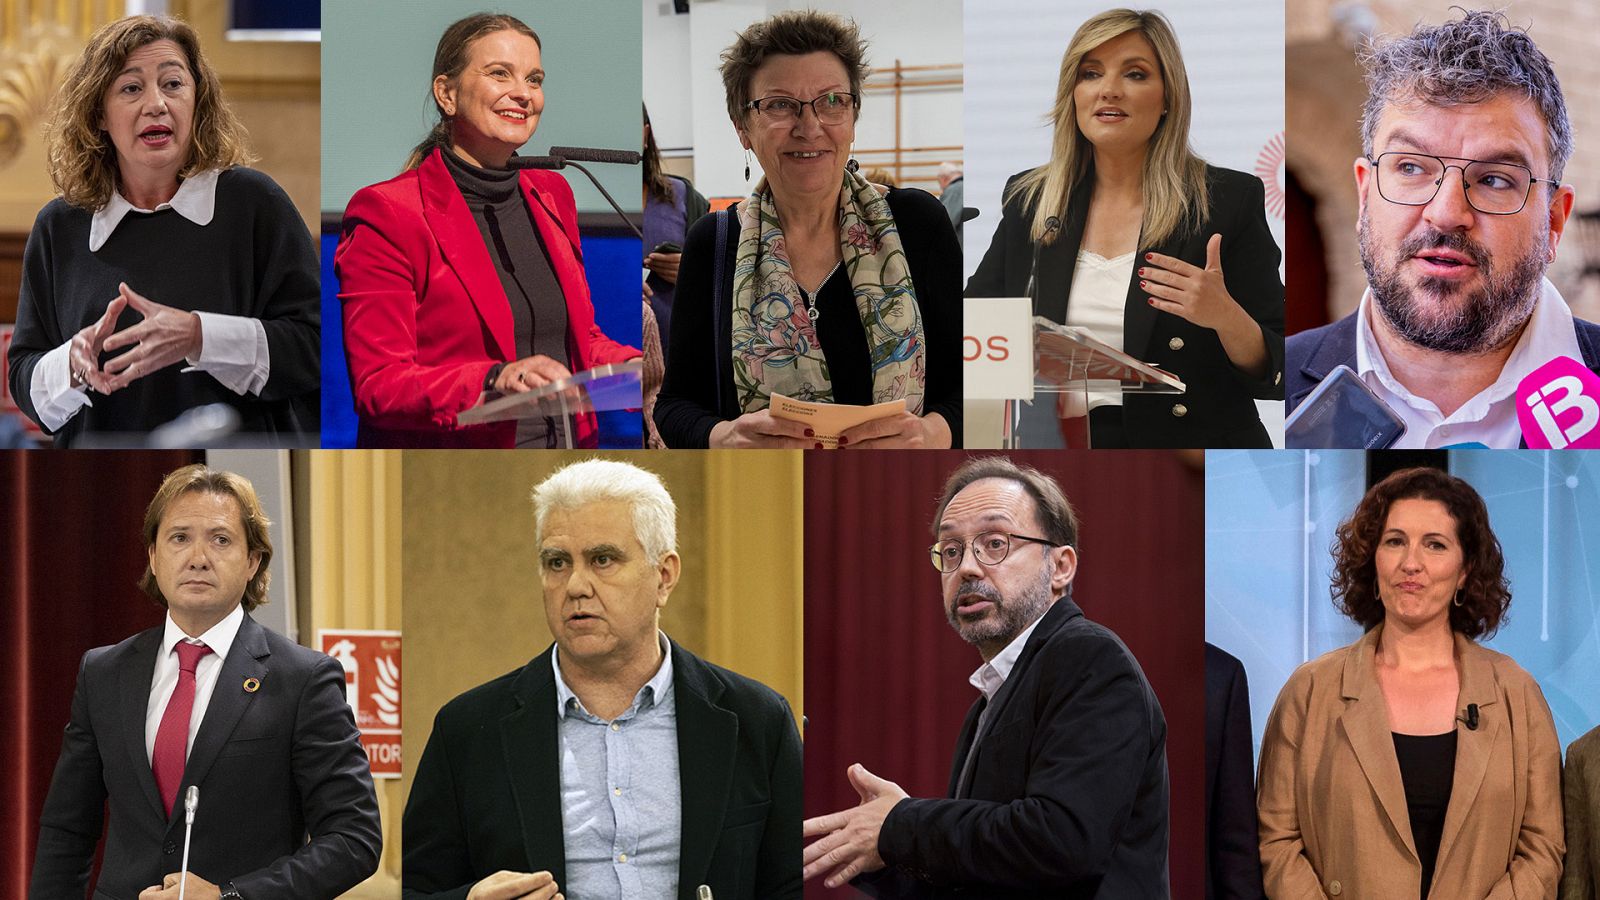 Candidatos en Baleares: Armengol (PSOE), Prohens (PP), Jover (Podemos-IU), Guasp (Cs), Apesteguia (Més per Mallorca), Campos (Vox), Melià (El Pi), Castells (Més per Menorca) y Tur (GxF)